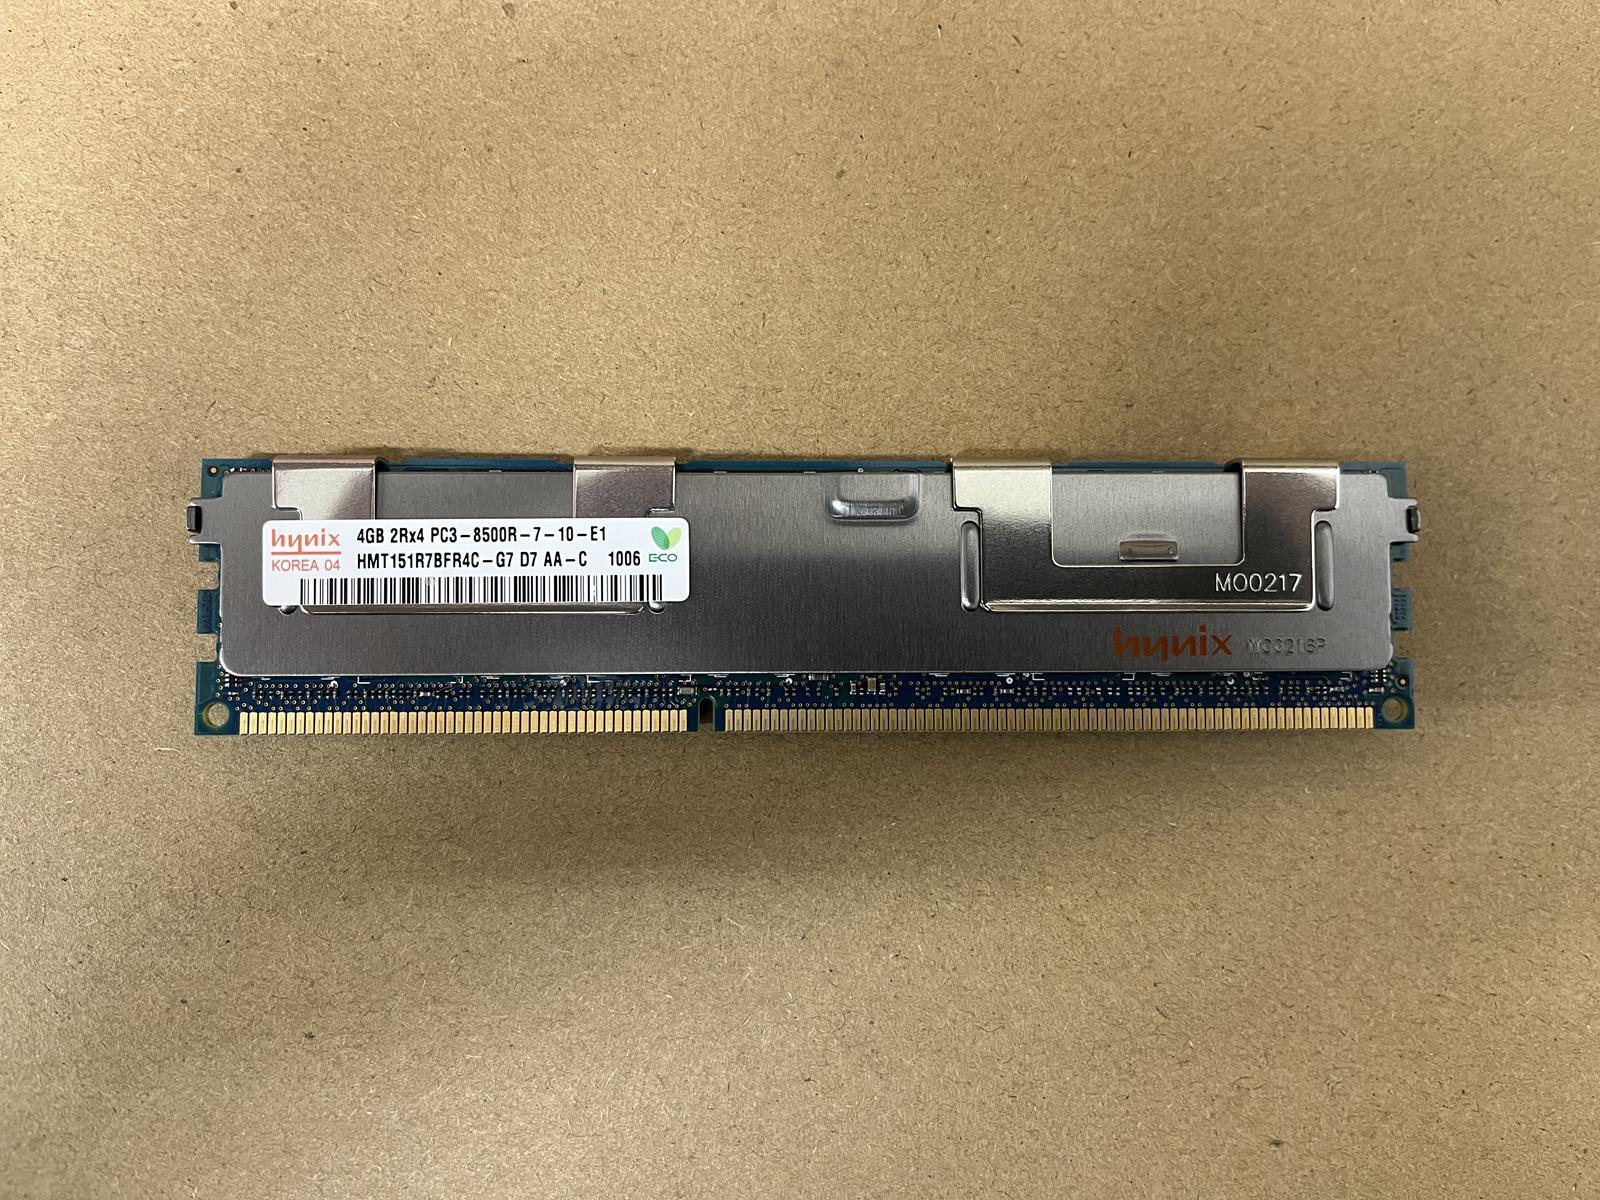 SK HYNIX 4 GB 2Rx4 PC3-8500R DIMM RAM HMT151R7BFR4C-G7 D7 AA-C